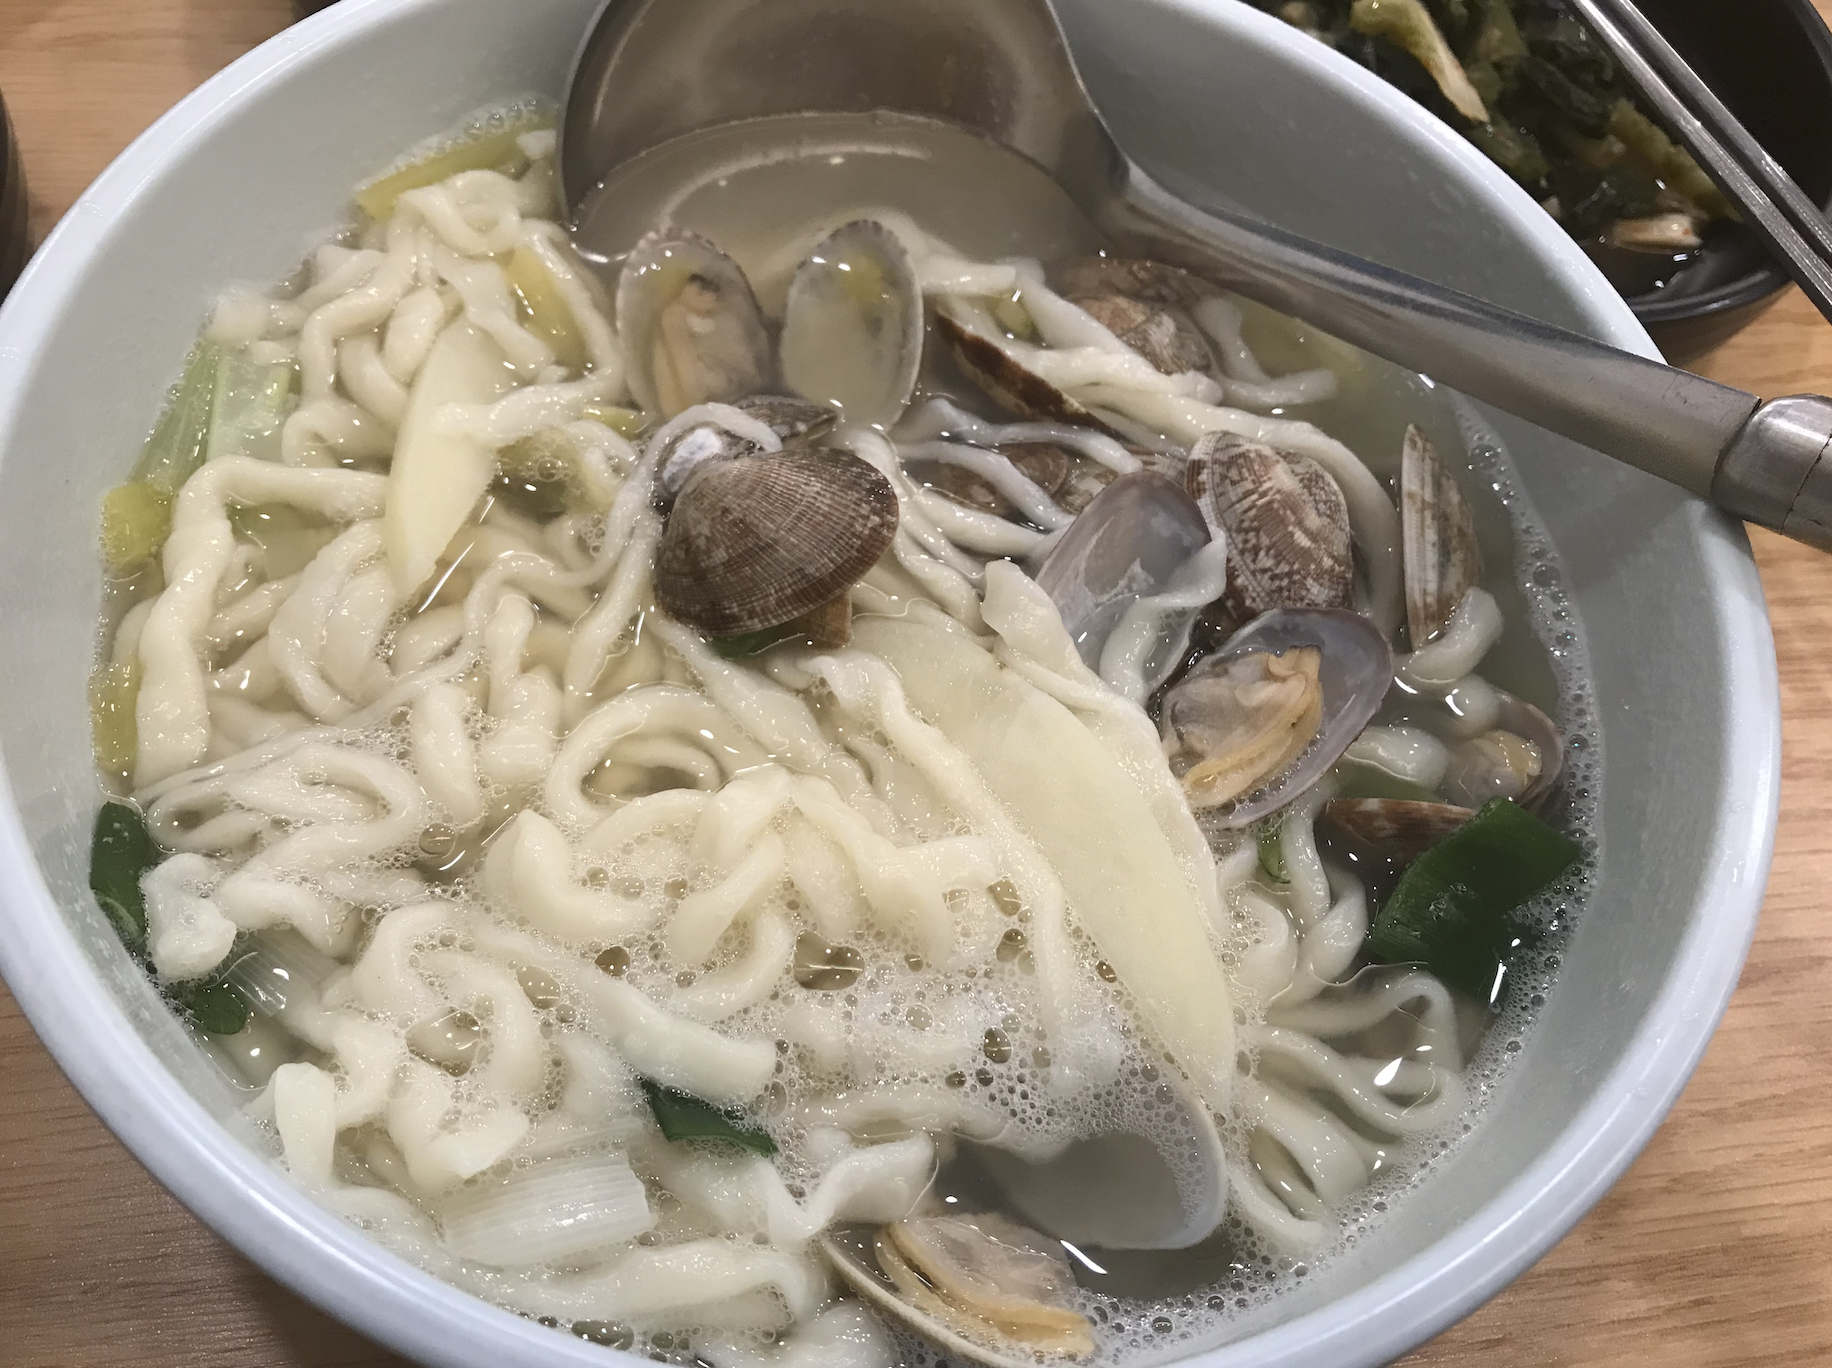 Korean noodle dish